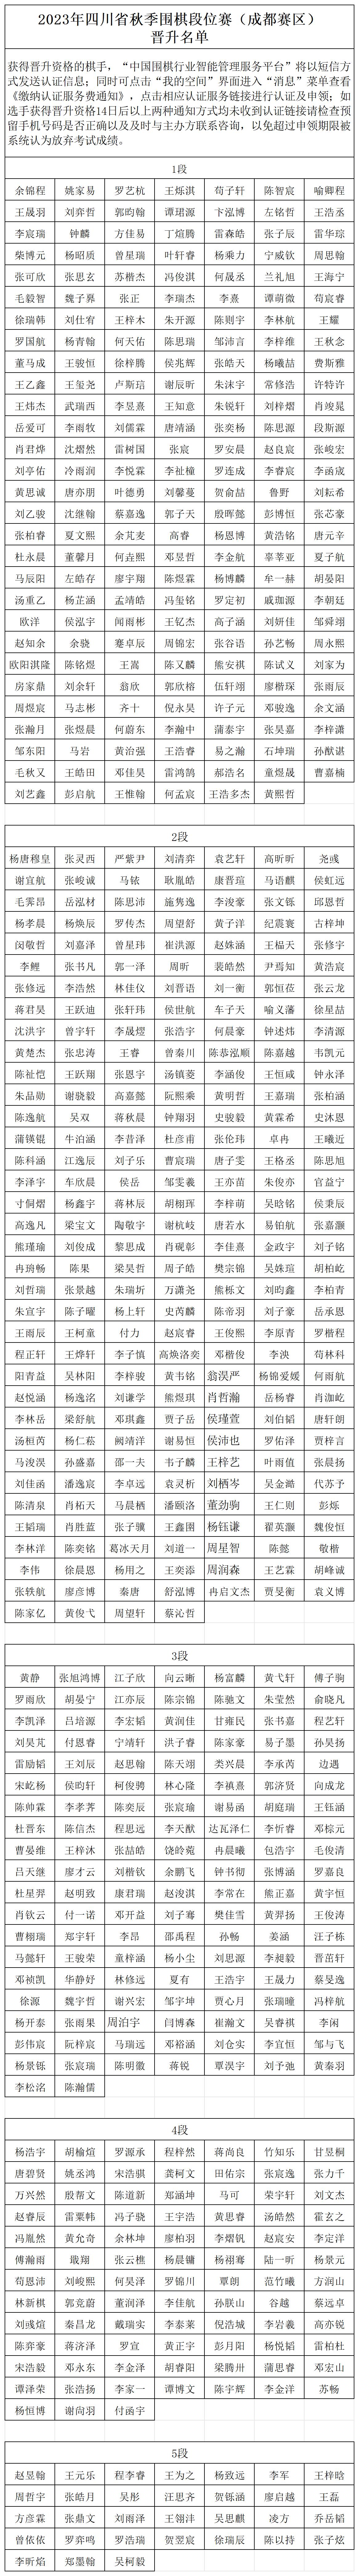 2023年四川省秋季围棋段位赛（成都赛区）晋升名单_Sheet1.jpg